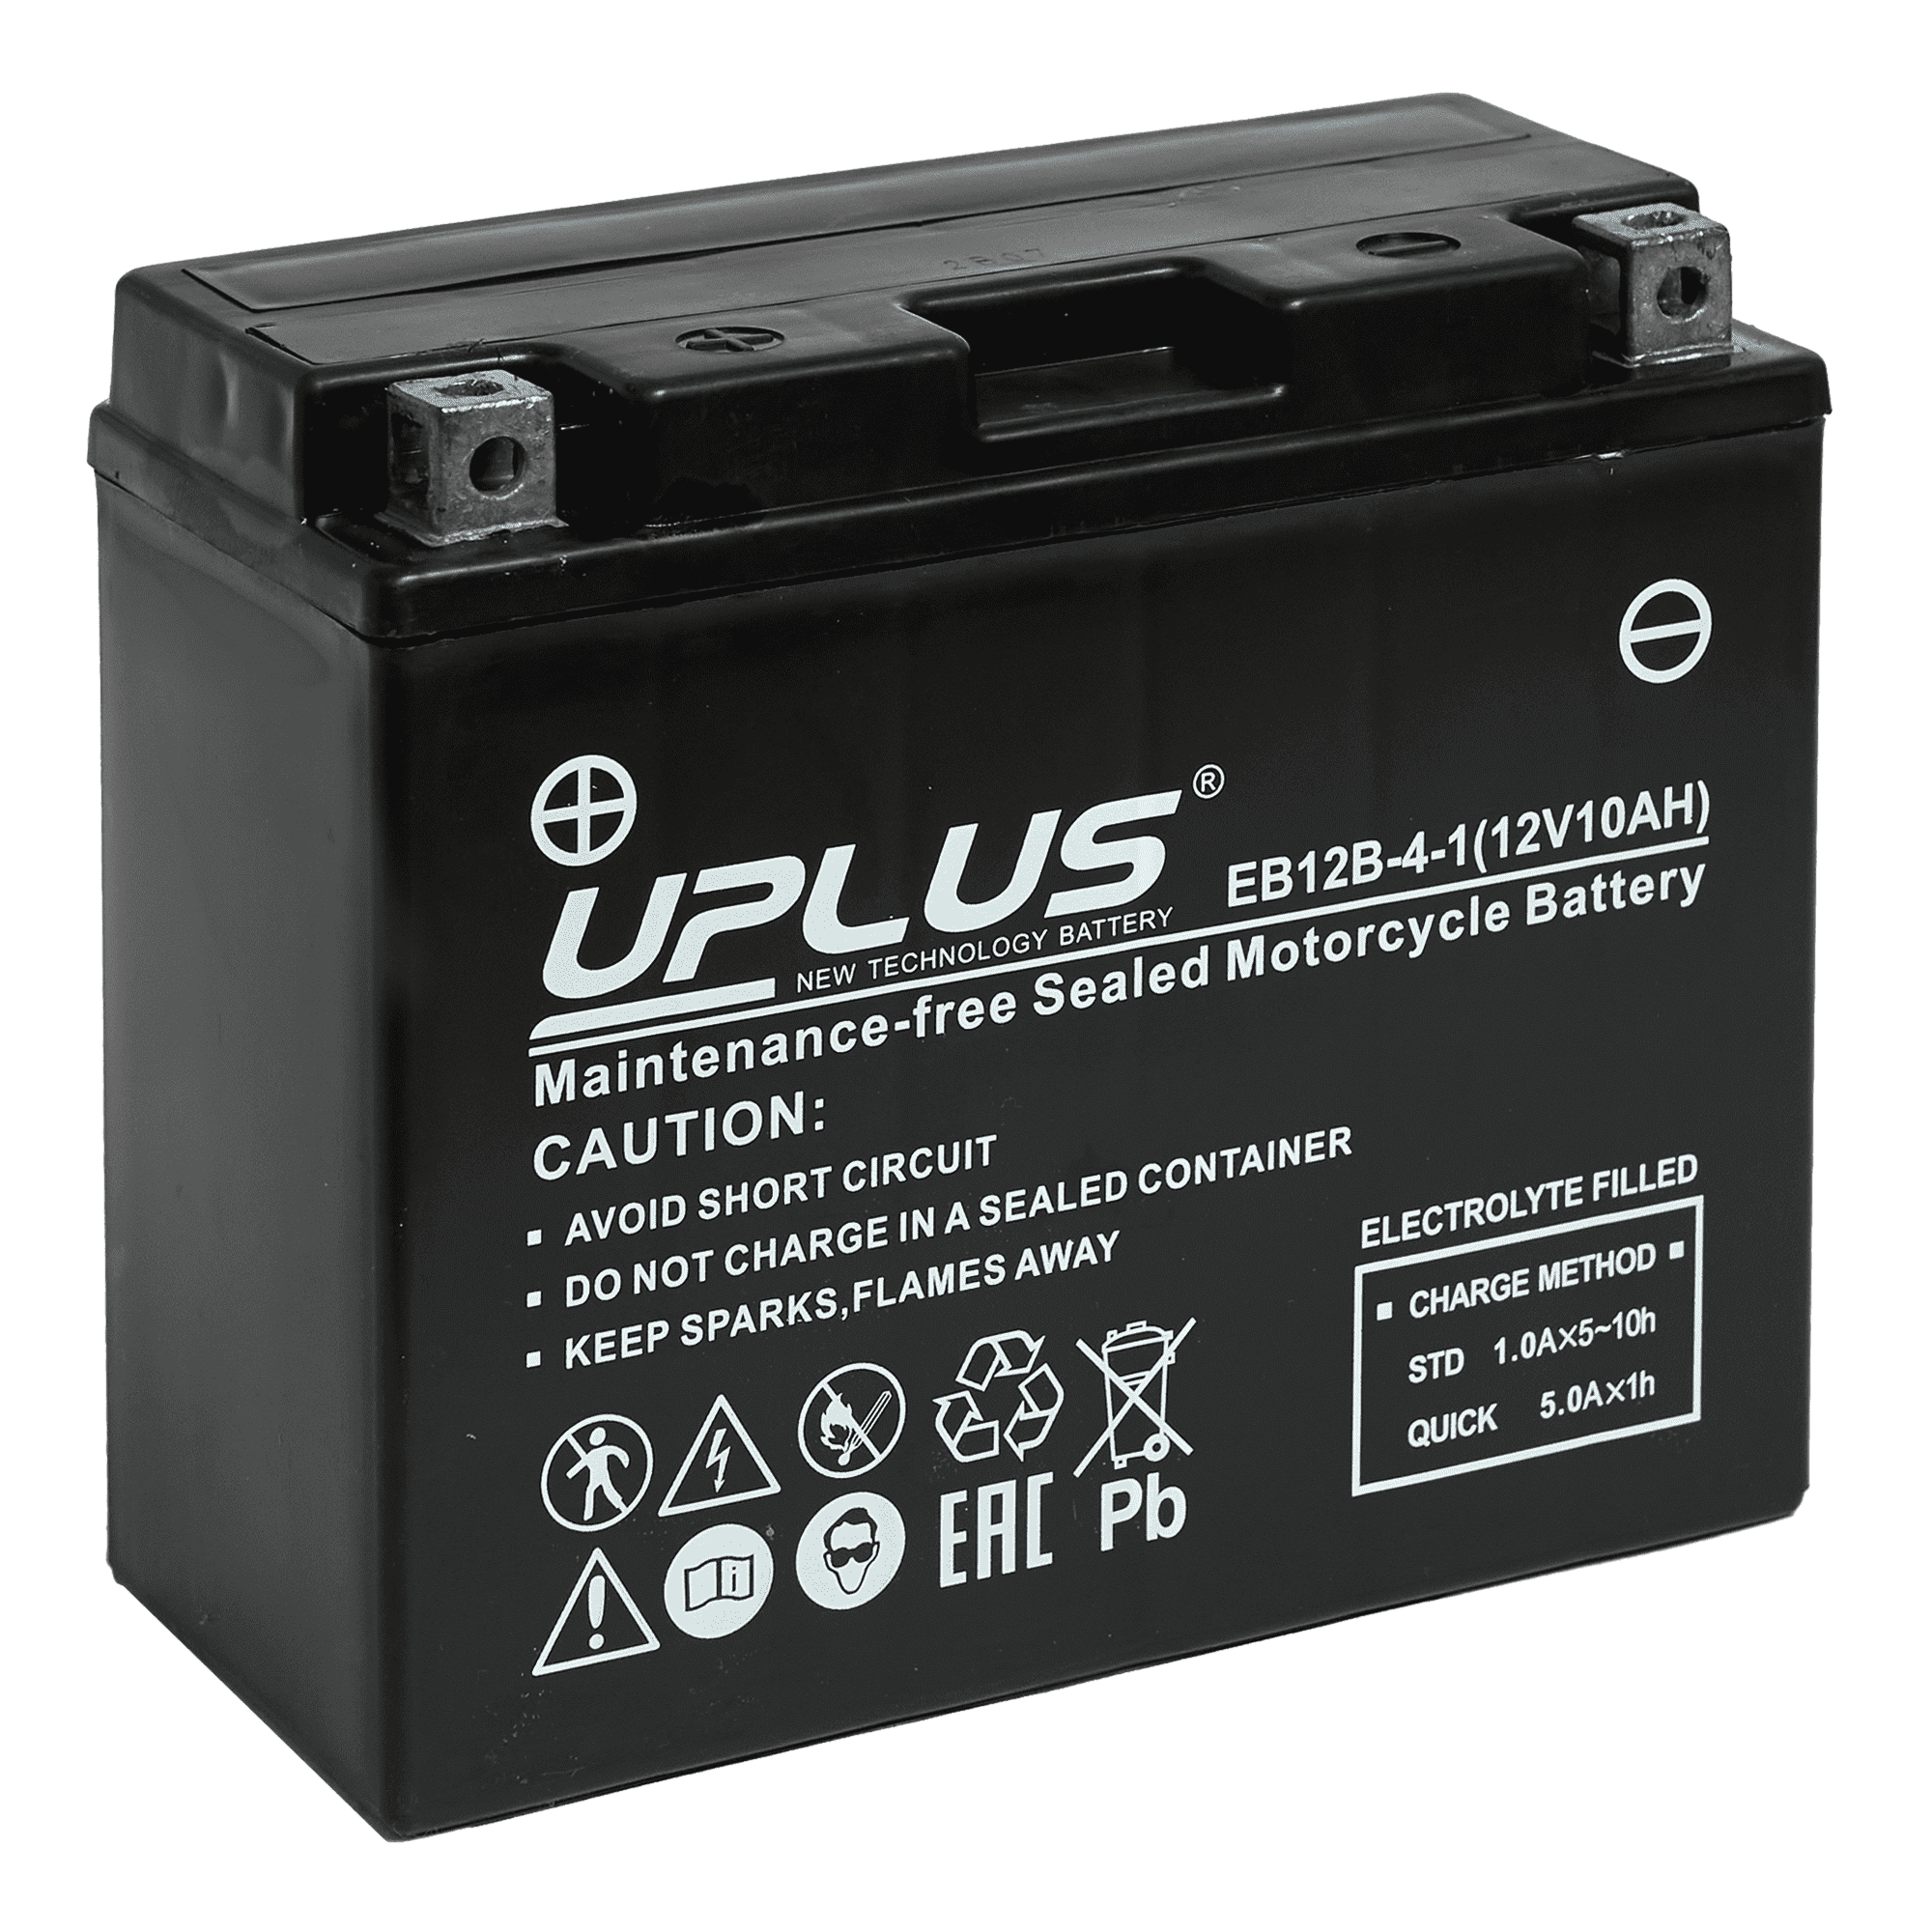 Мотоциклетная аккумуляторная батарея UPLUS High Performance  EB12B-4-1, 10 Ач, 1/0